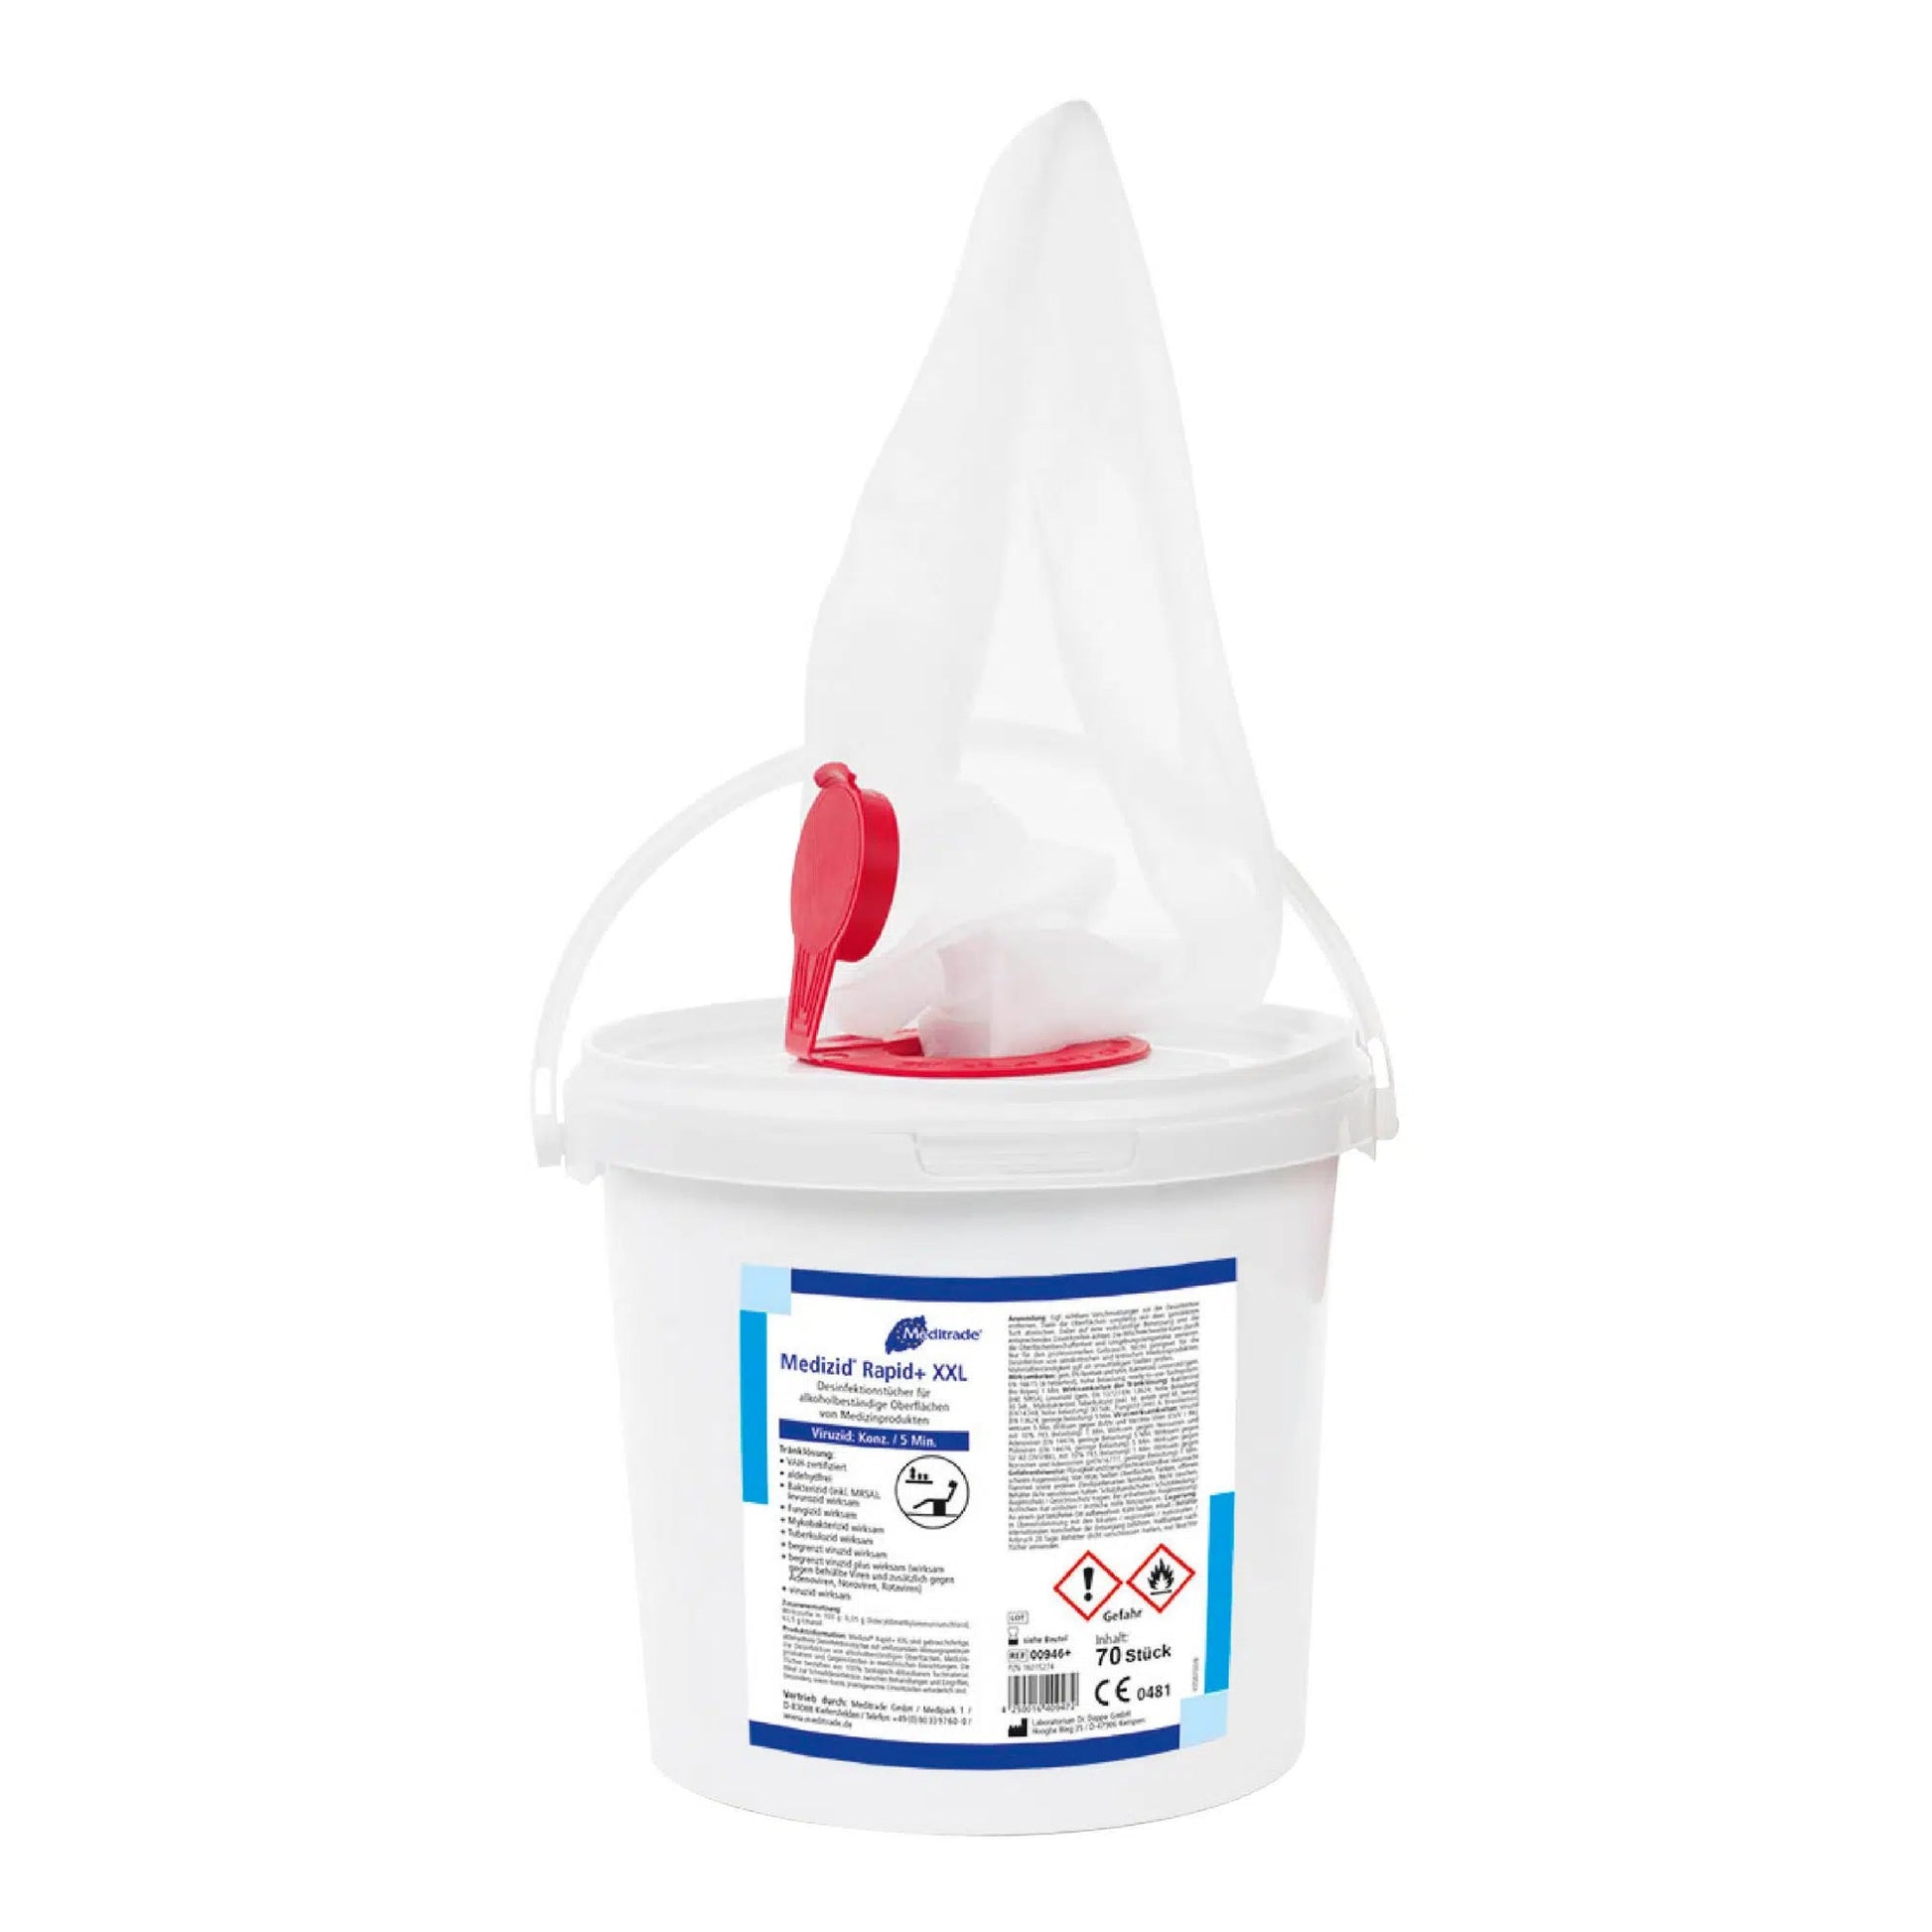 Ein weißer Plastikeimer mit Deckel und roter Ausgießeröffnung, beschriftet mit „Meditrade Medizid® Rapid+ Desinfektionstücher“ mit verschiedenen Sicherheits- und Produktinformationen auf dem Etikett. Auch der Eimerhenkel ist sichtbar.